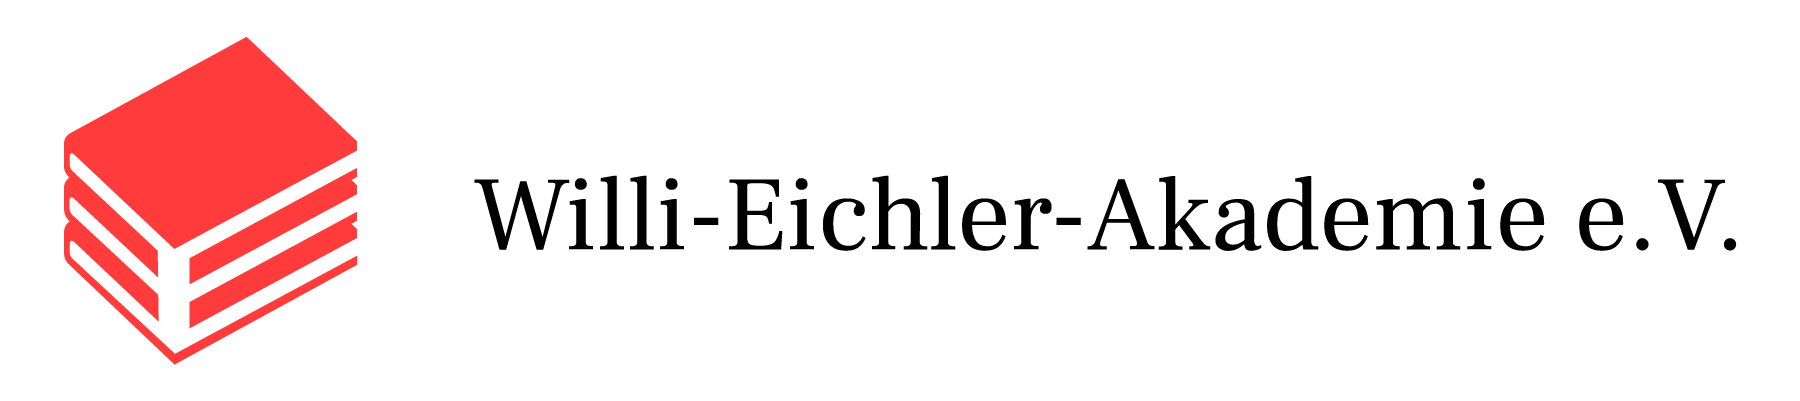 Logo Willi-Eichler-Akademie e. V. Quelle: Willi-Eichler-Akademie e. V.